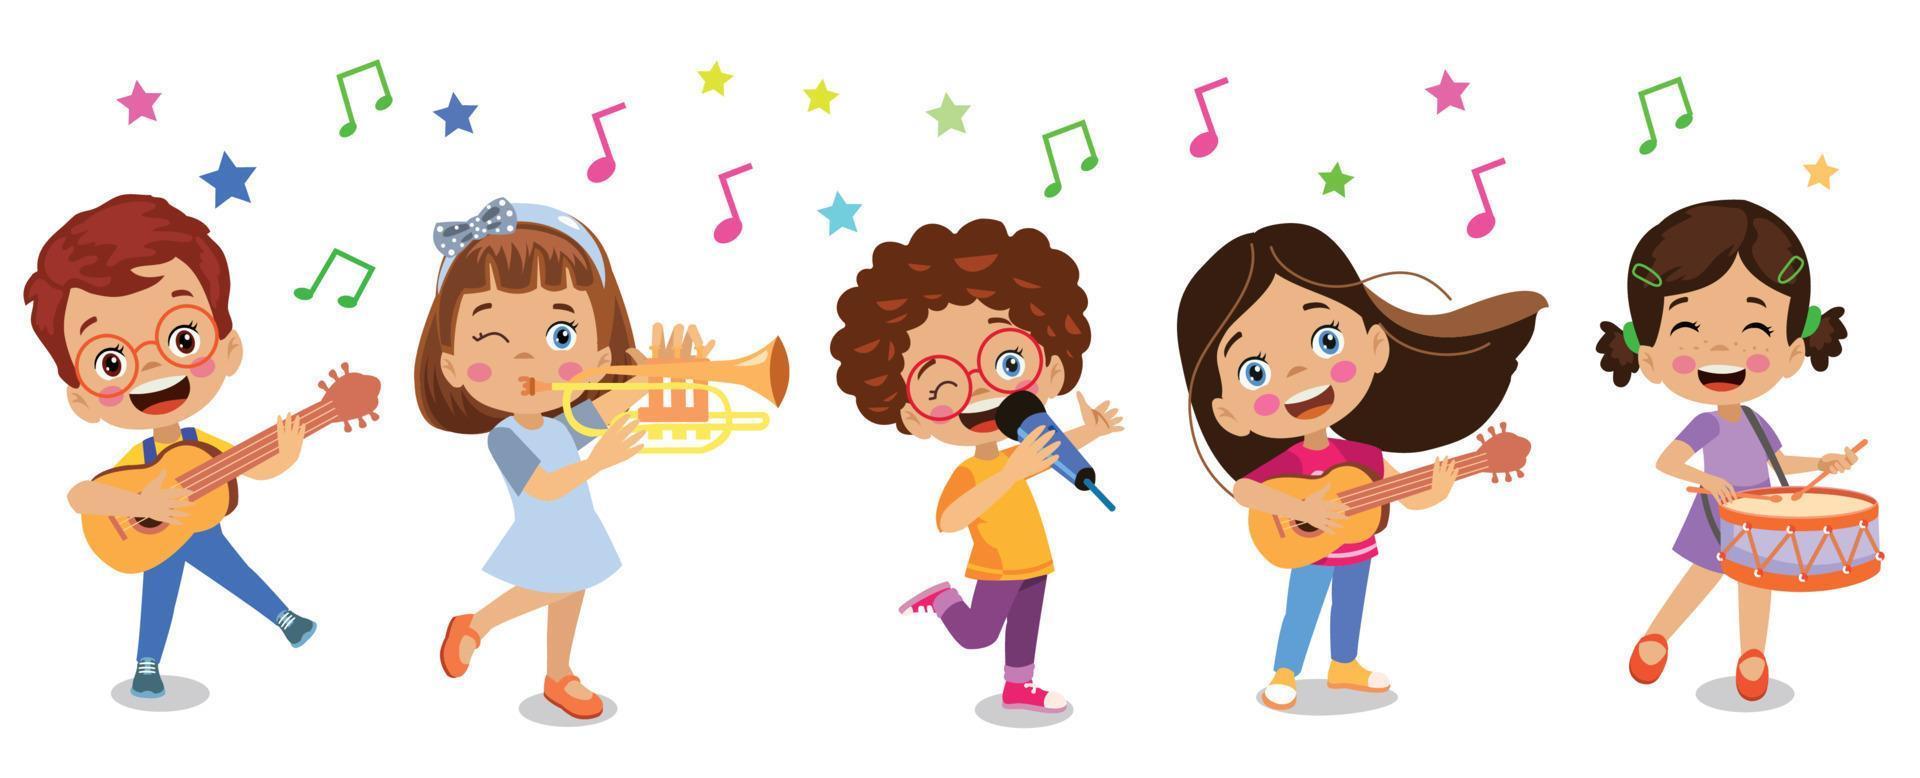 glückliche kinder, die instrumente spielen und singen vektor